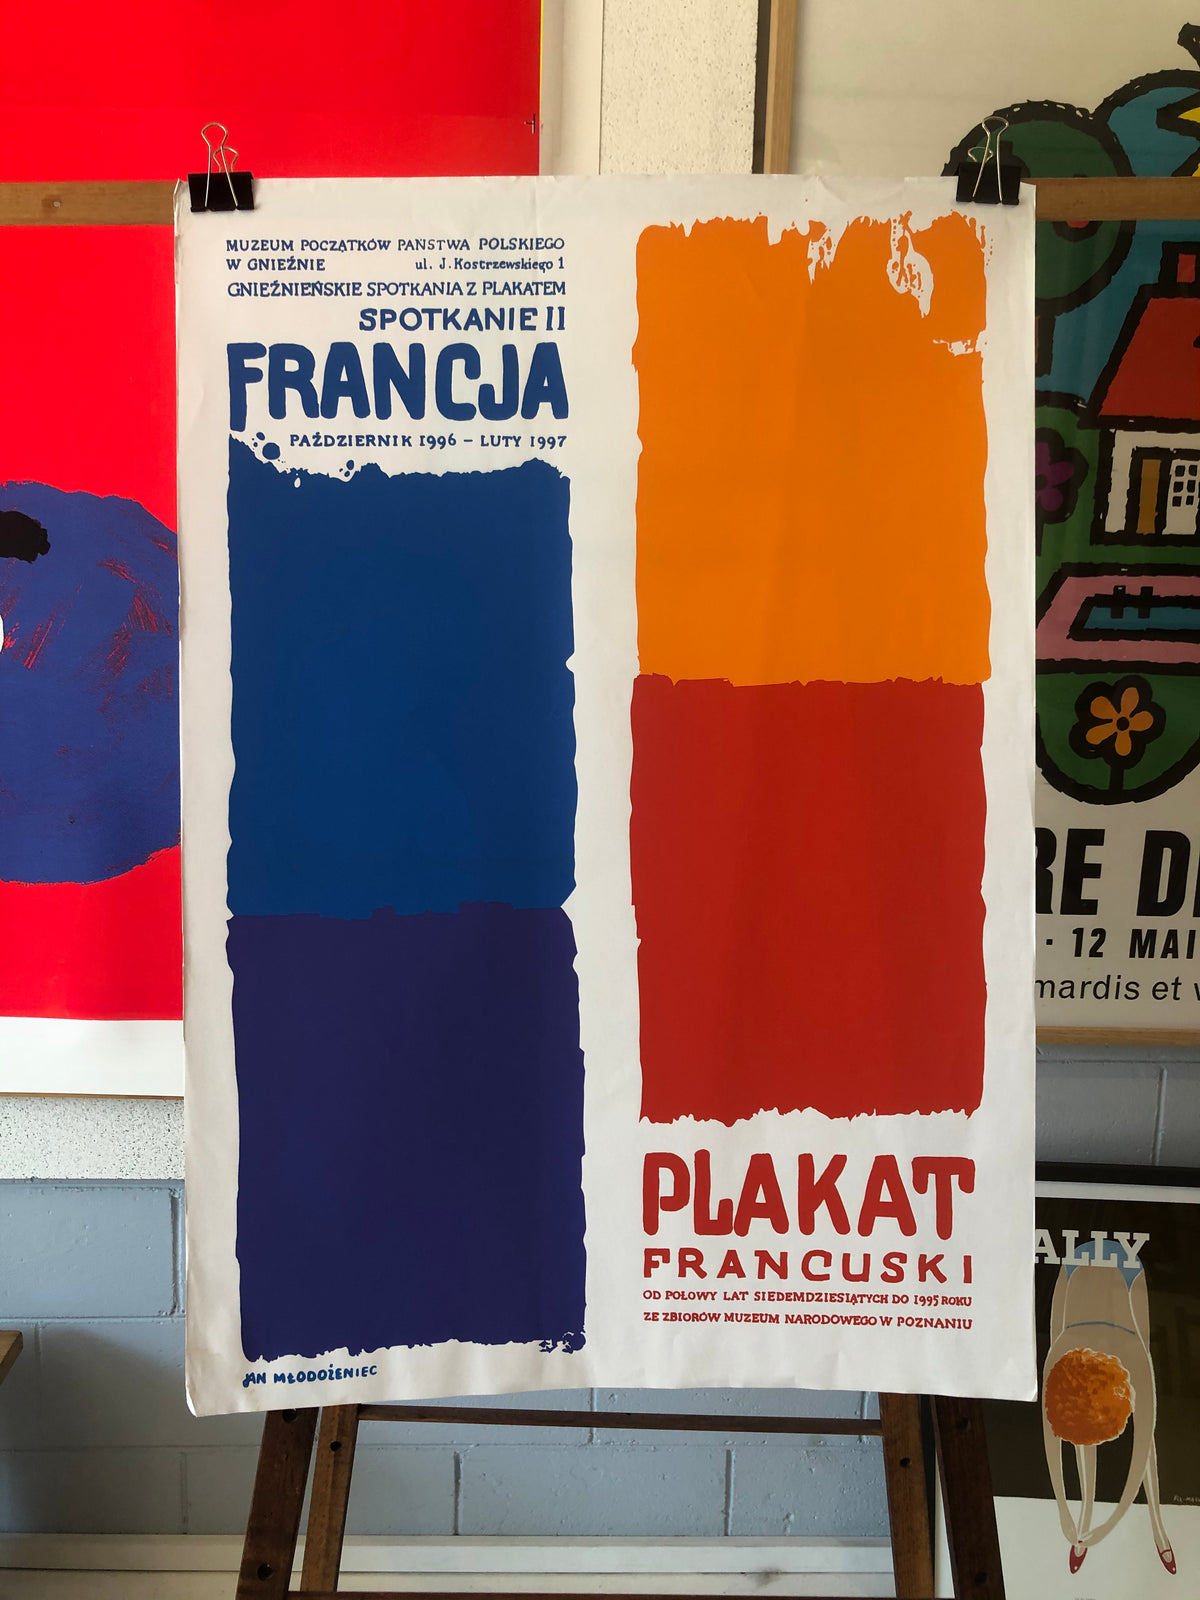 Francja Plakat Polish Poster